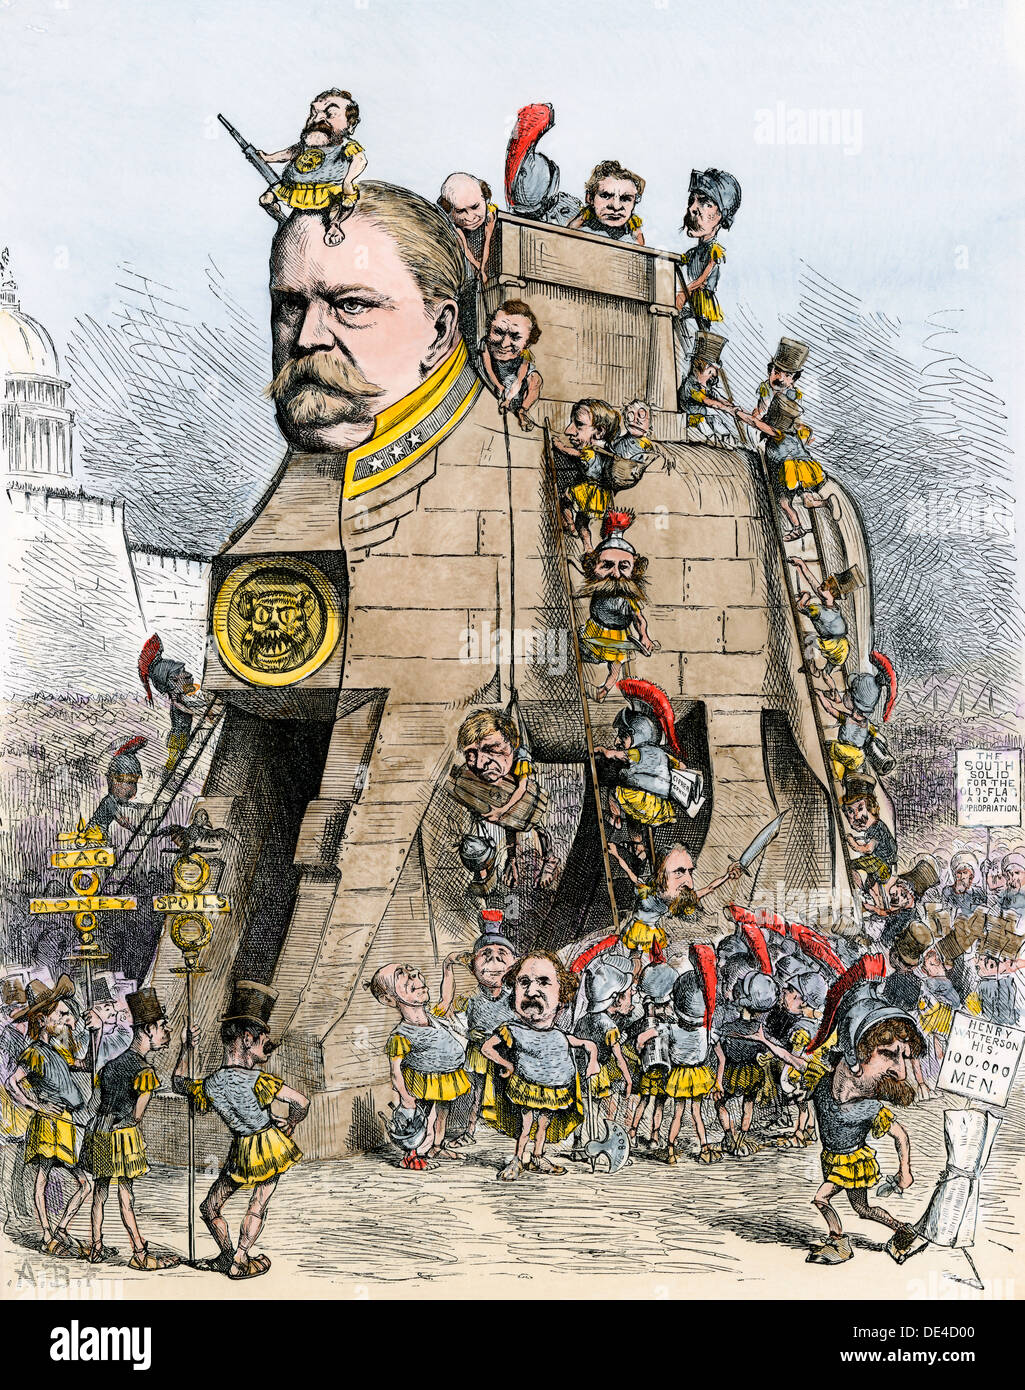 Winfield Scott Hancock cartooned comme cheval de Troie, la campagne électorale de 1880. À la main, gravure sur bois Banque D'Images